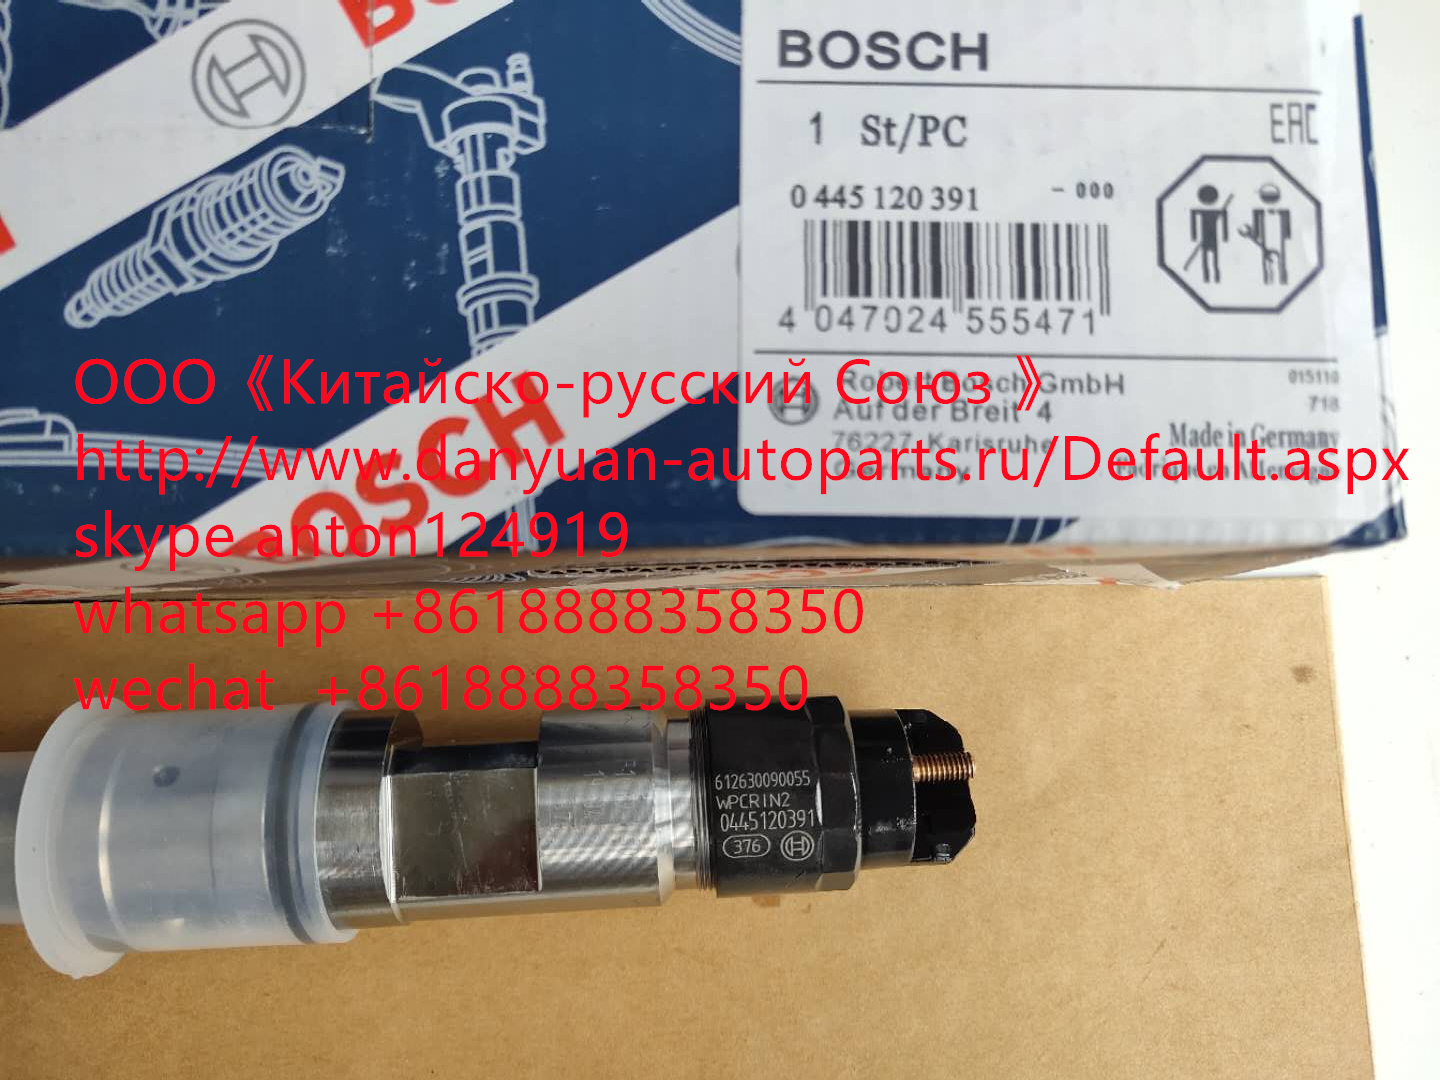 Форсунка топливная - Bosch 0445120391/ 612630090055